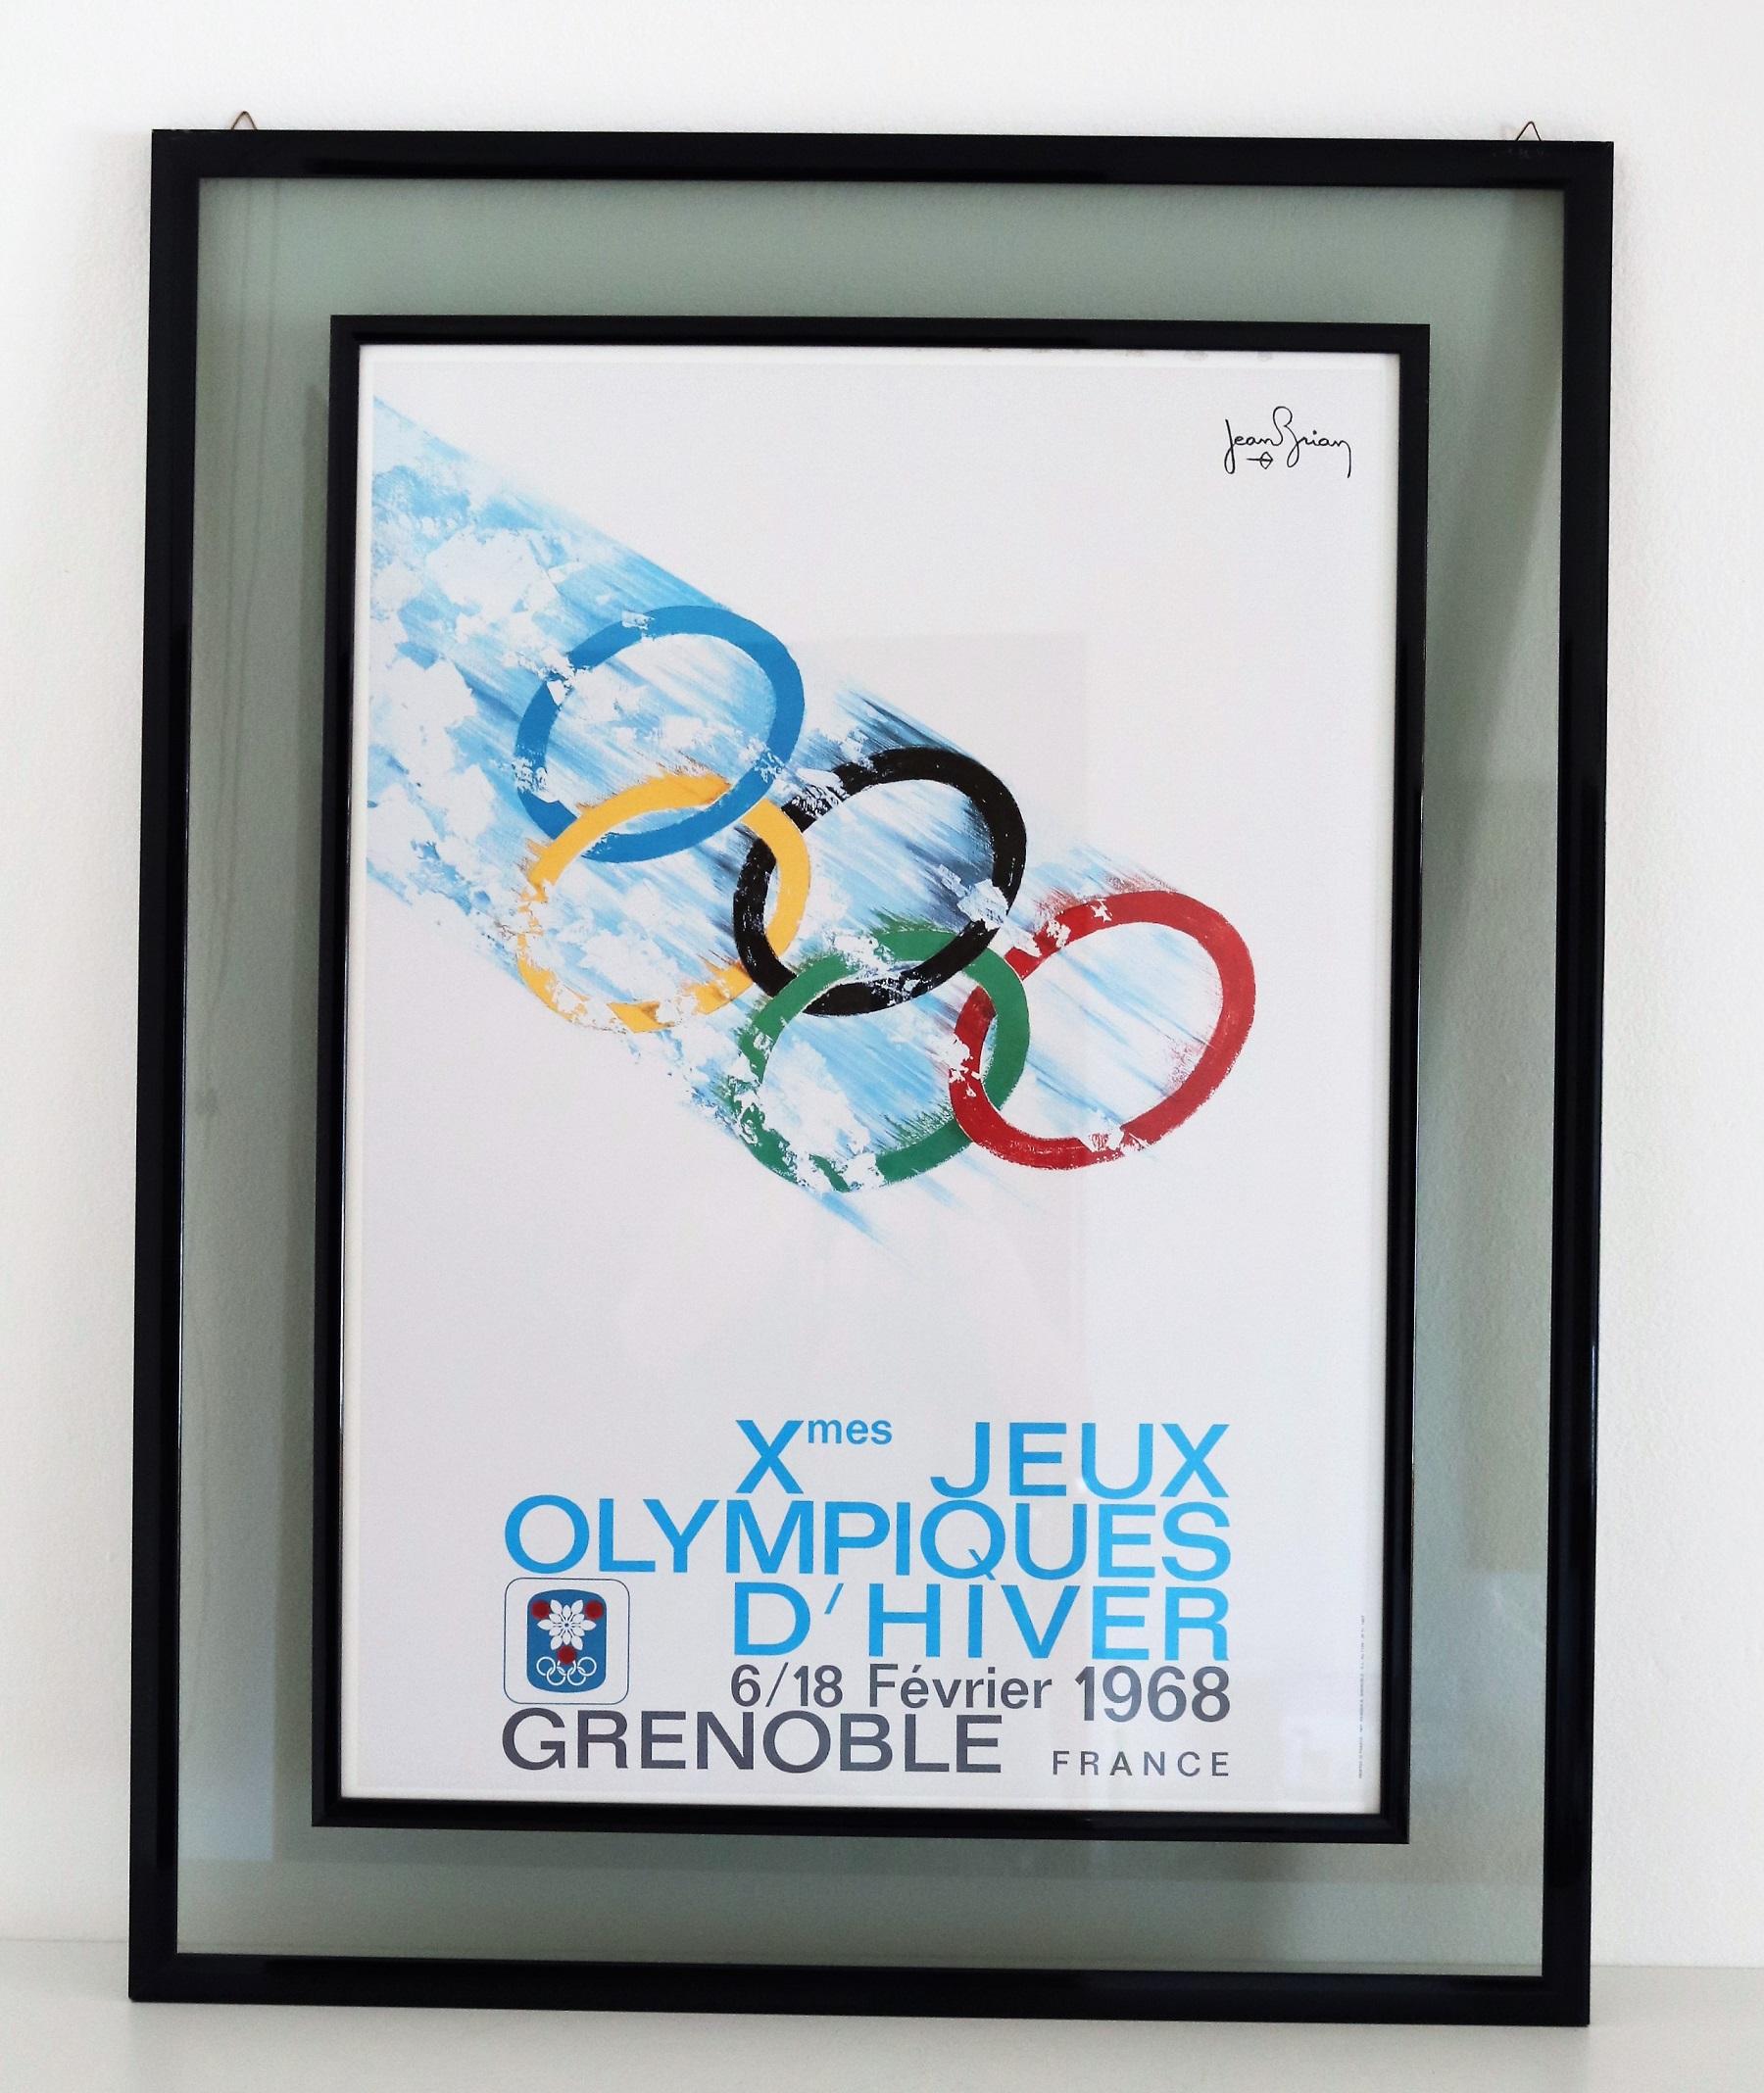 Schönes Wandbild eines alten Plakats von Jean Brian (1910-1990) für die Olympischen Winterspiele in Grenoble, Frankreich, im Februar 1968.
Das Plakat ist in sehr gutem Zustand und kommt mit seinem originalen Holz- und Doppelglasrahmen in blauer